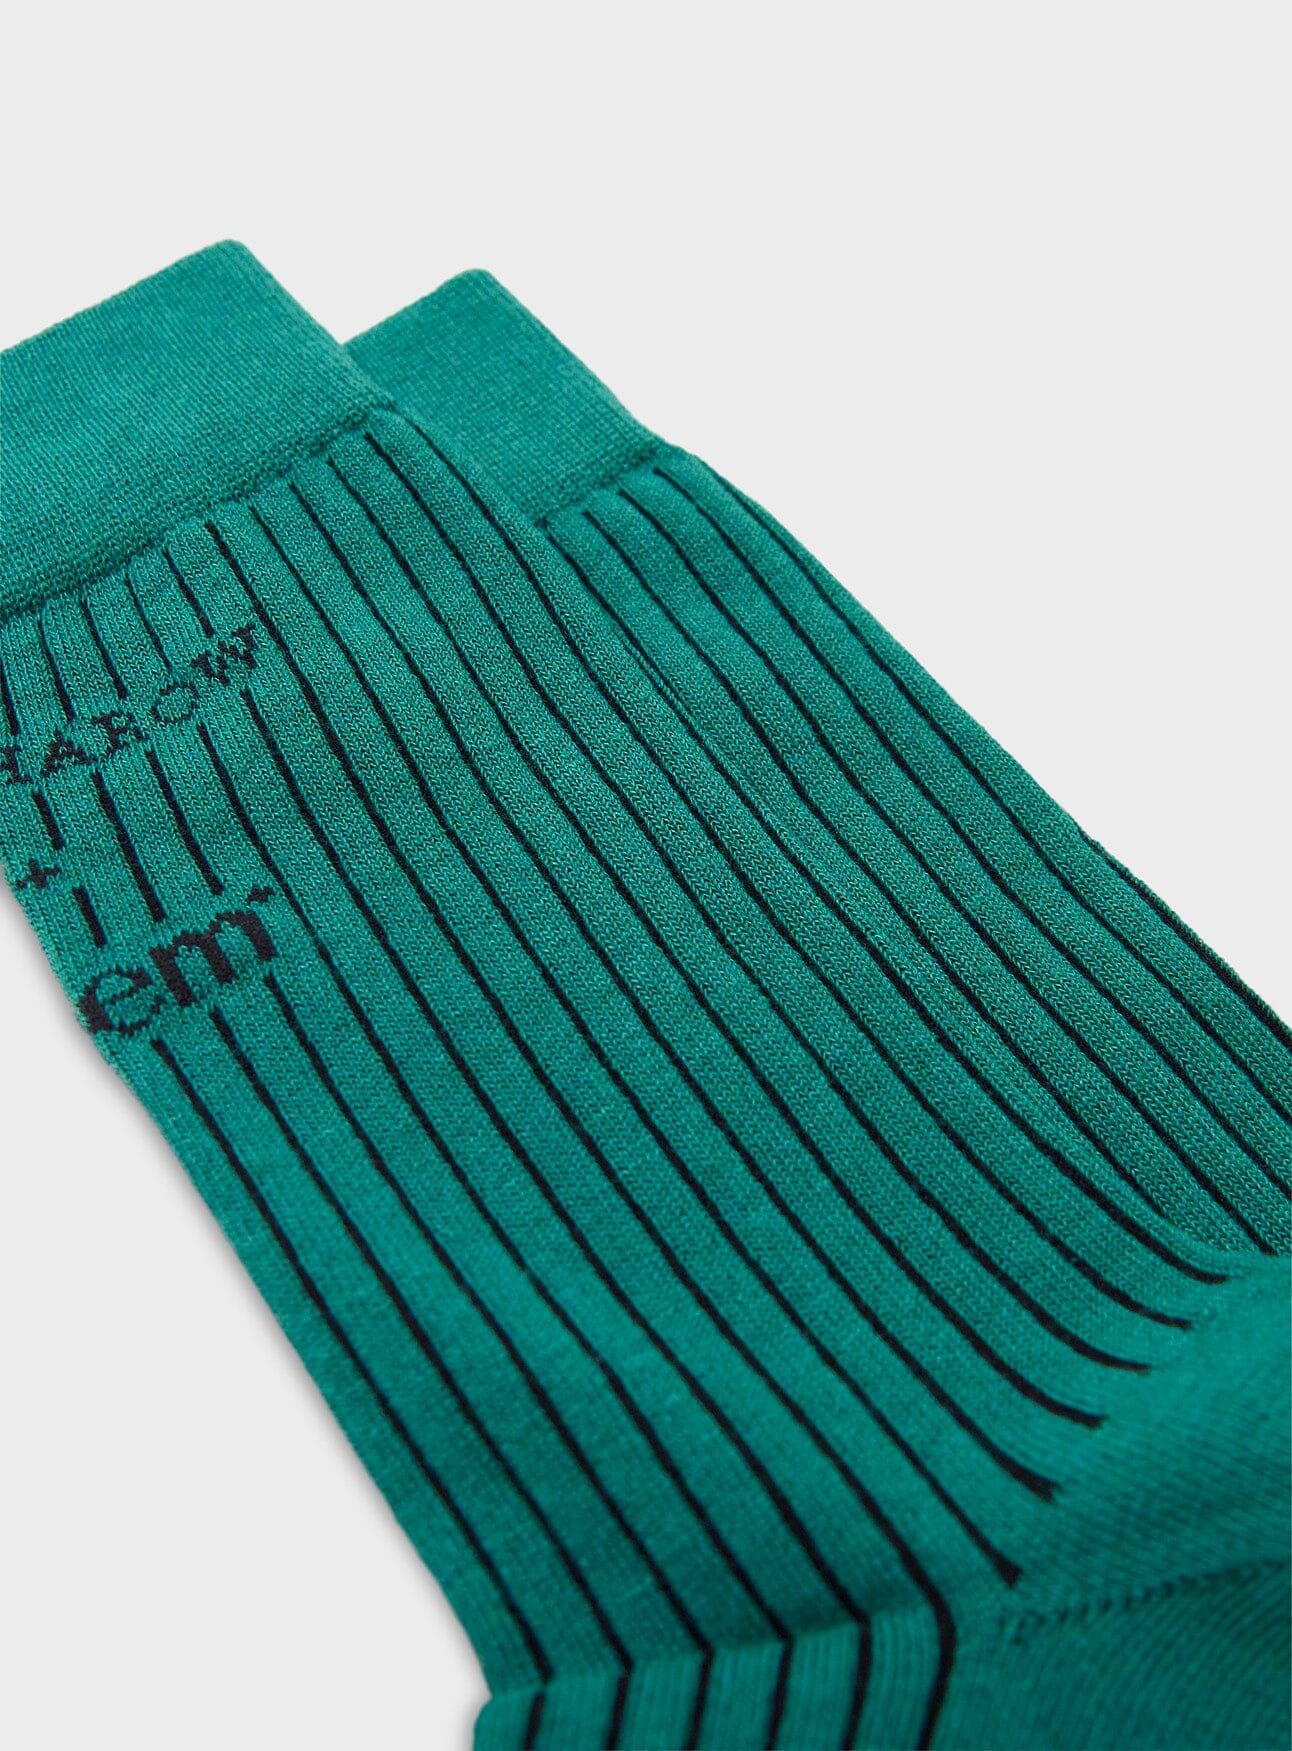 Recycled Men's Socks - Green Neem London 